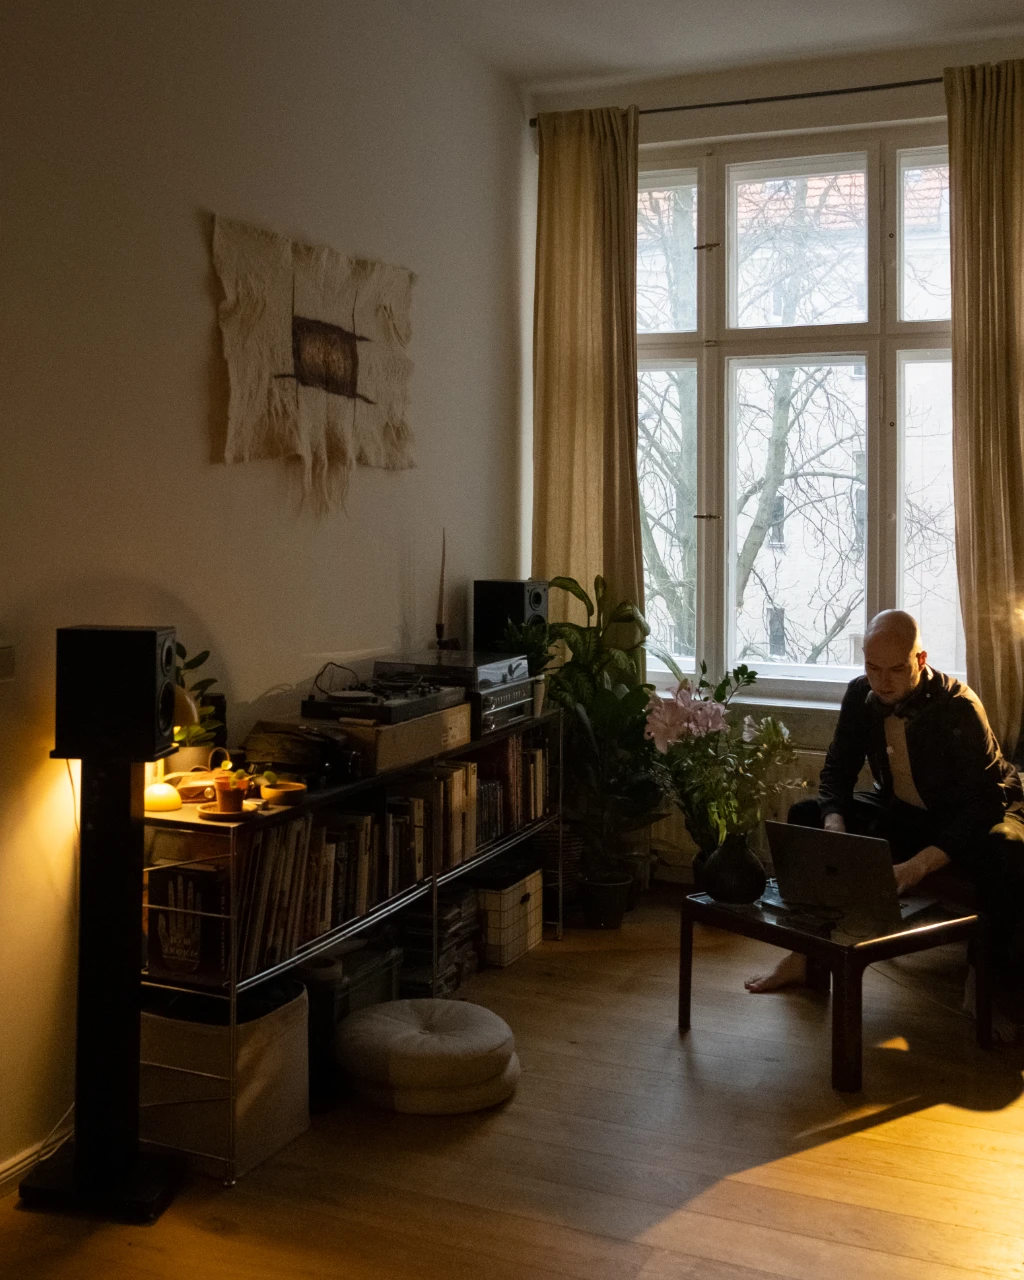 Ein junger Mann sitzt in einem großem Wohnzimmer an seinem Macbook. Im Regal links stehen Schallplatten. Durch das Fenster neben ihm kommt Tageslicht.